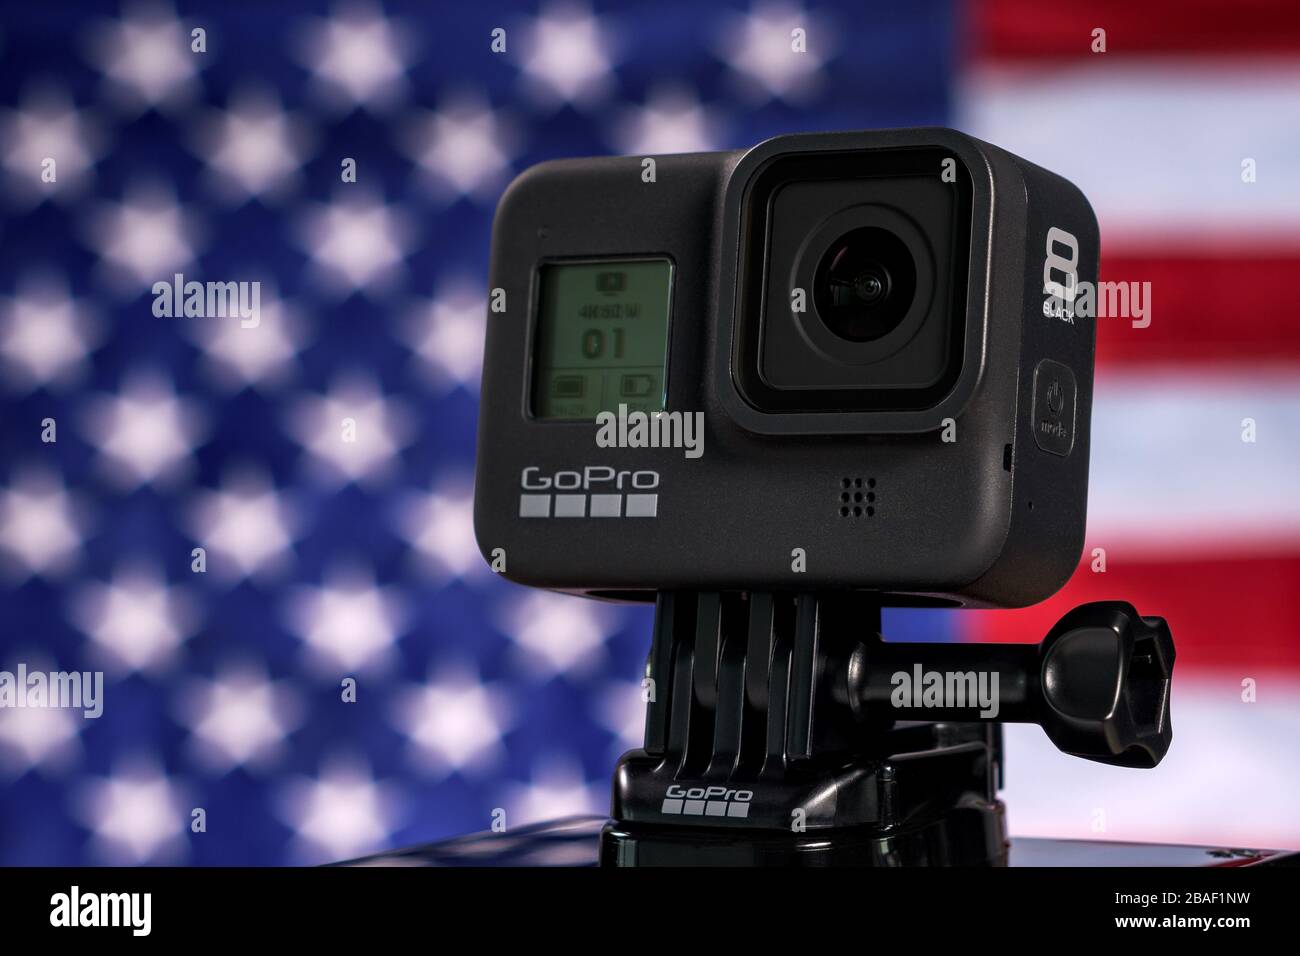 NOVI SAD, SERBIA - FEBBRAIO 21. 2020: Videocamera GoPro Hero 8 Black in grado di registrare filmati in 4K a 60 fps, editoriale illustrativo Foto Stock